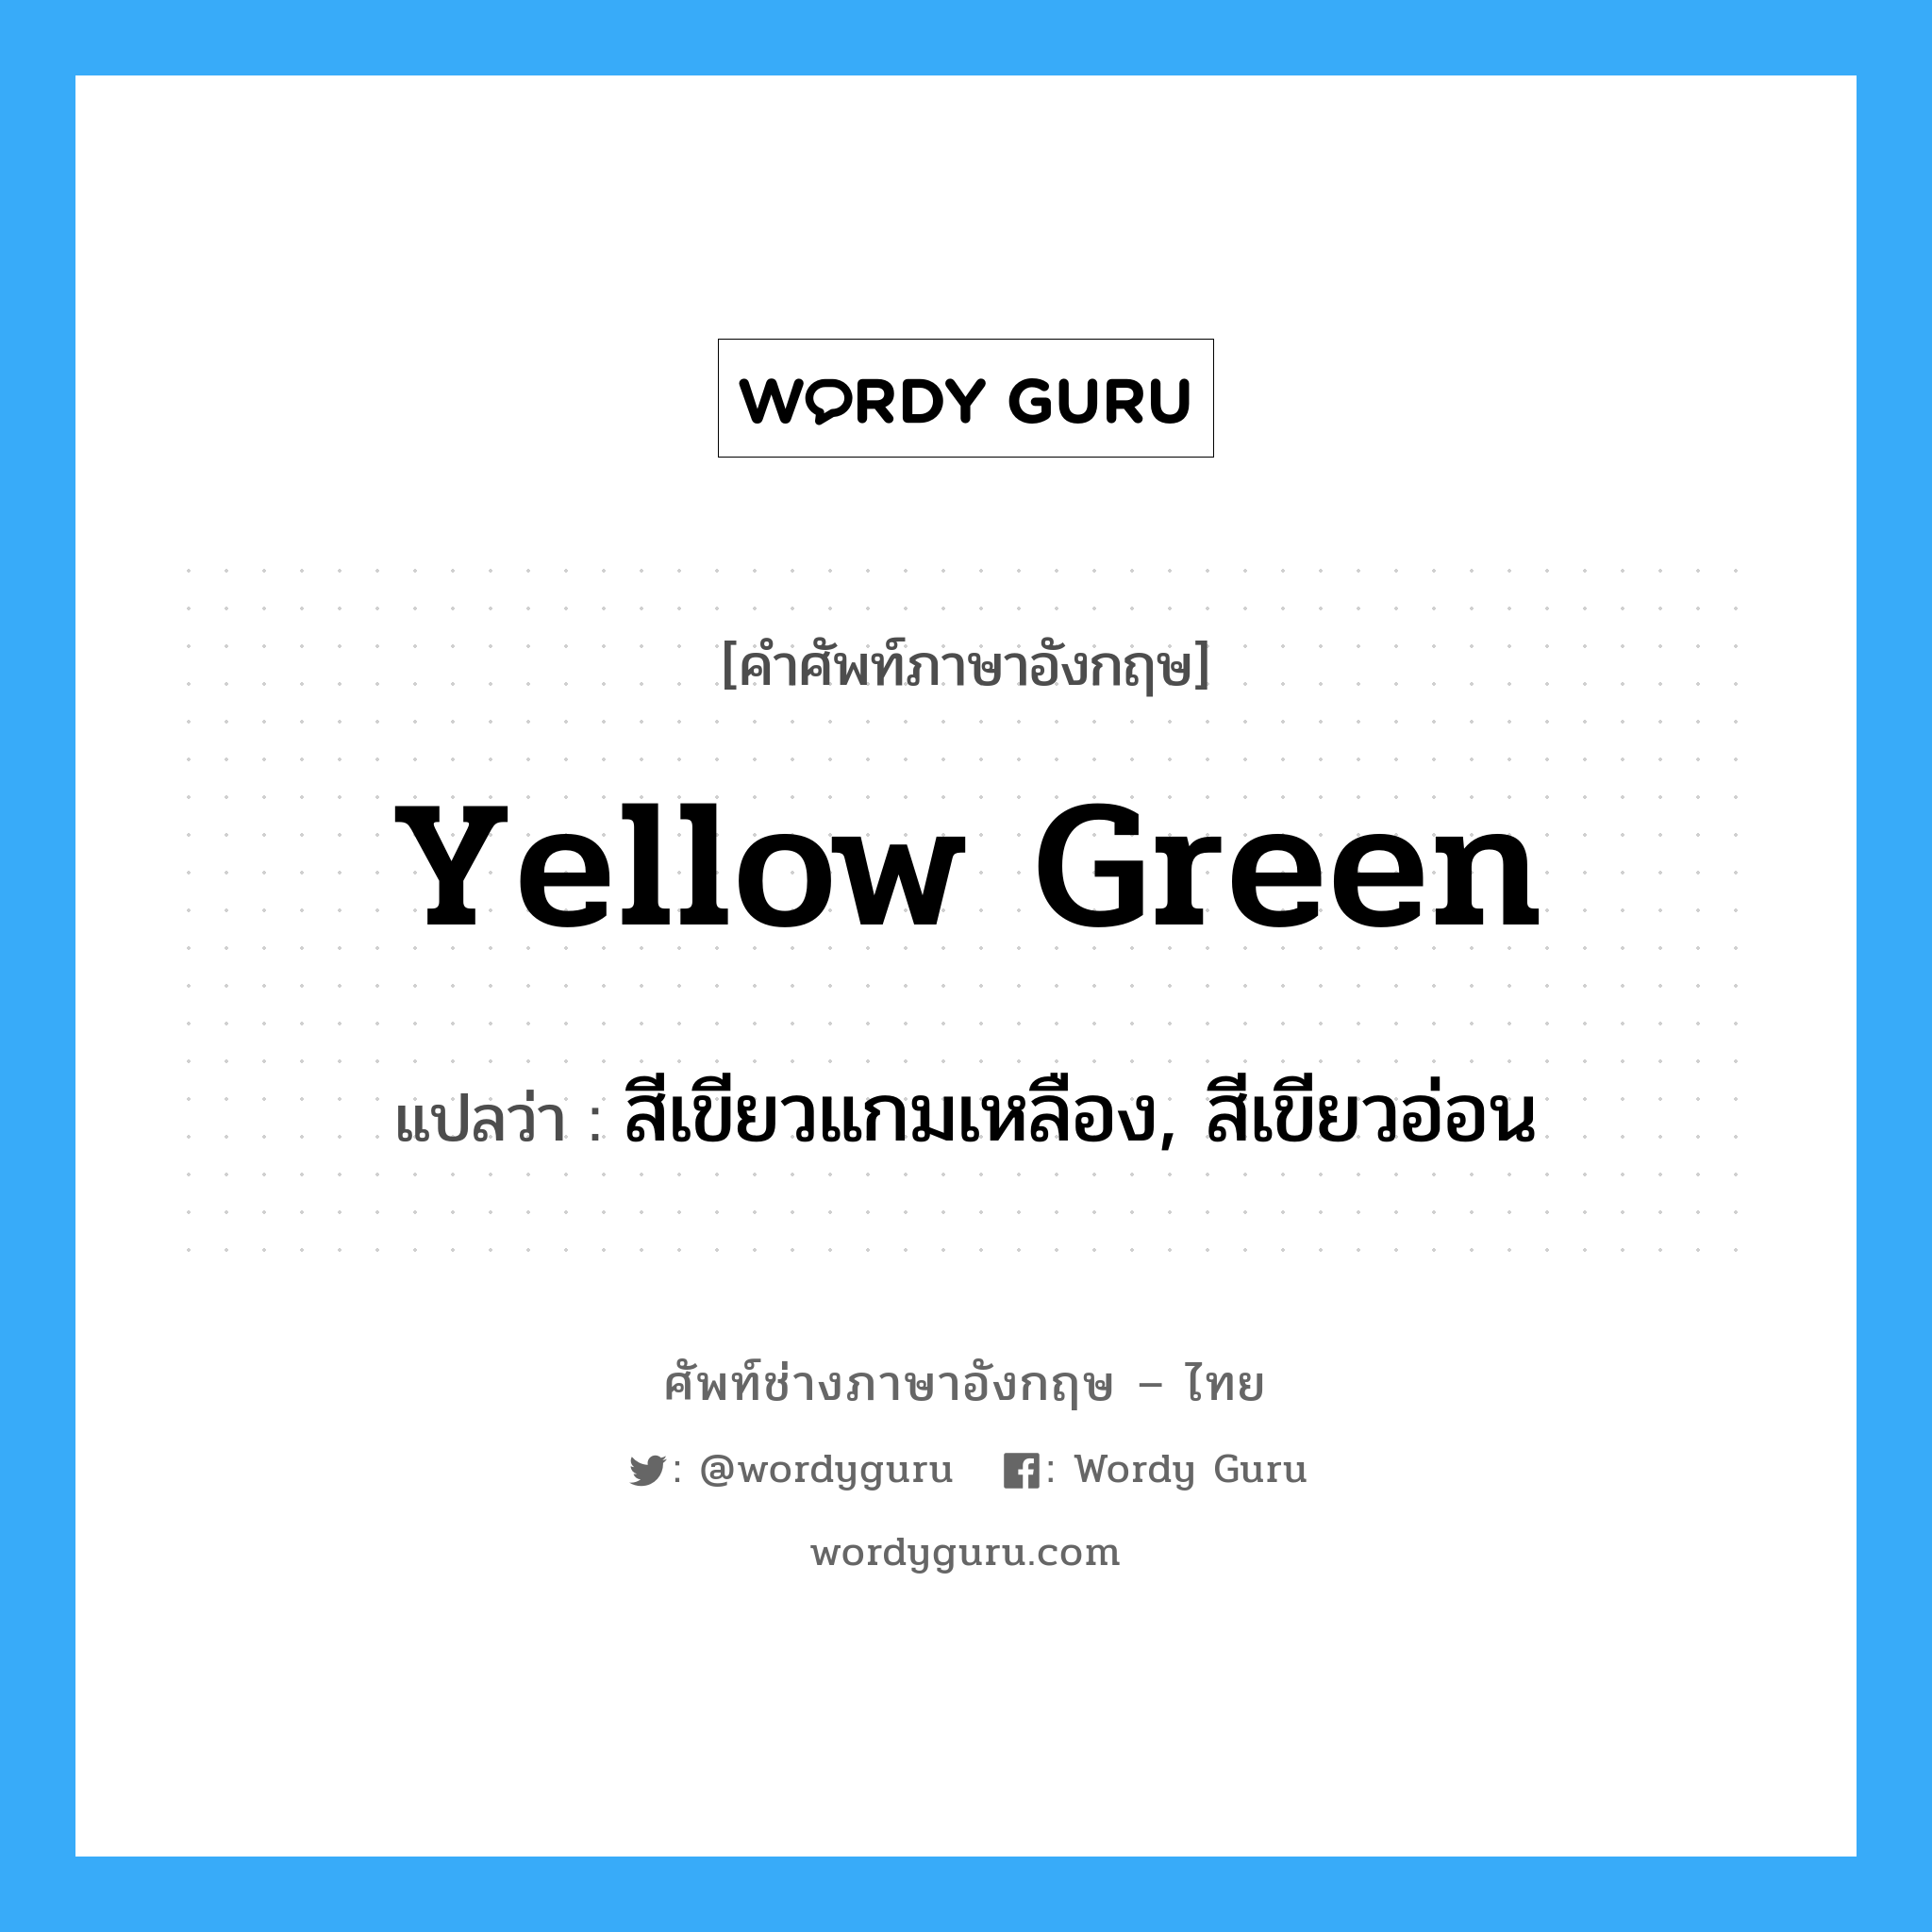 สีเขียวแกมเหลือง, สีเขียวอ่อน ภาษาอังกฤษ?, คำศัพท์ช่างภาษาอังกฤษ - ไทย สีเขียวแกมเหลือง, สีเขียวอ่อน คำศัพท์ภาษาอังกฤษ สีเขียวแกมเหลือง, สีเขียวอ่อน แปลว่า yellow green